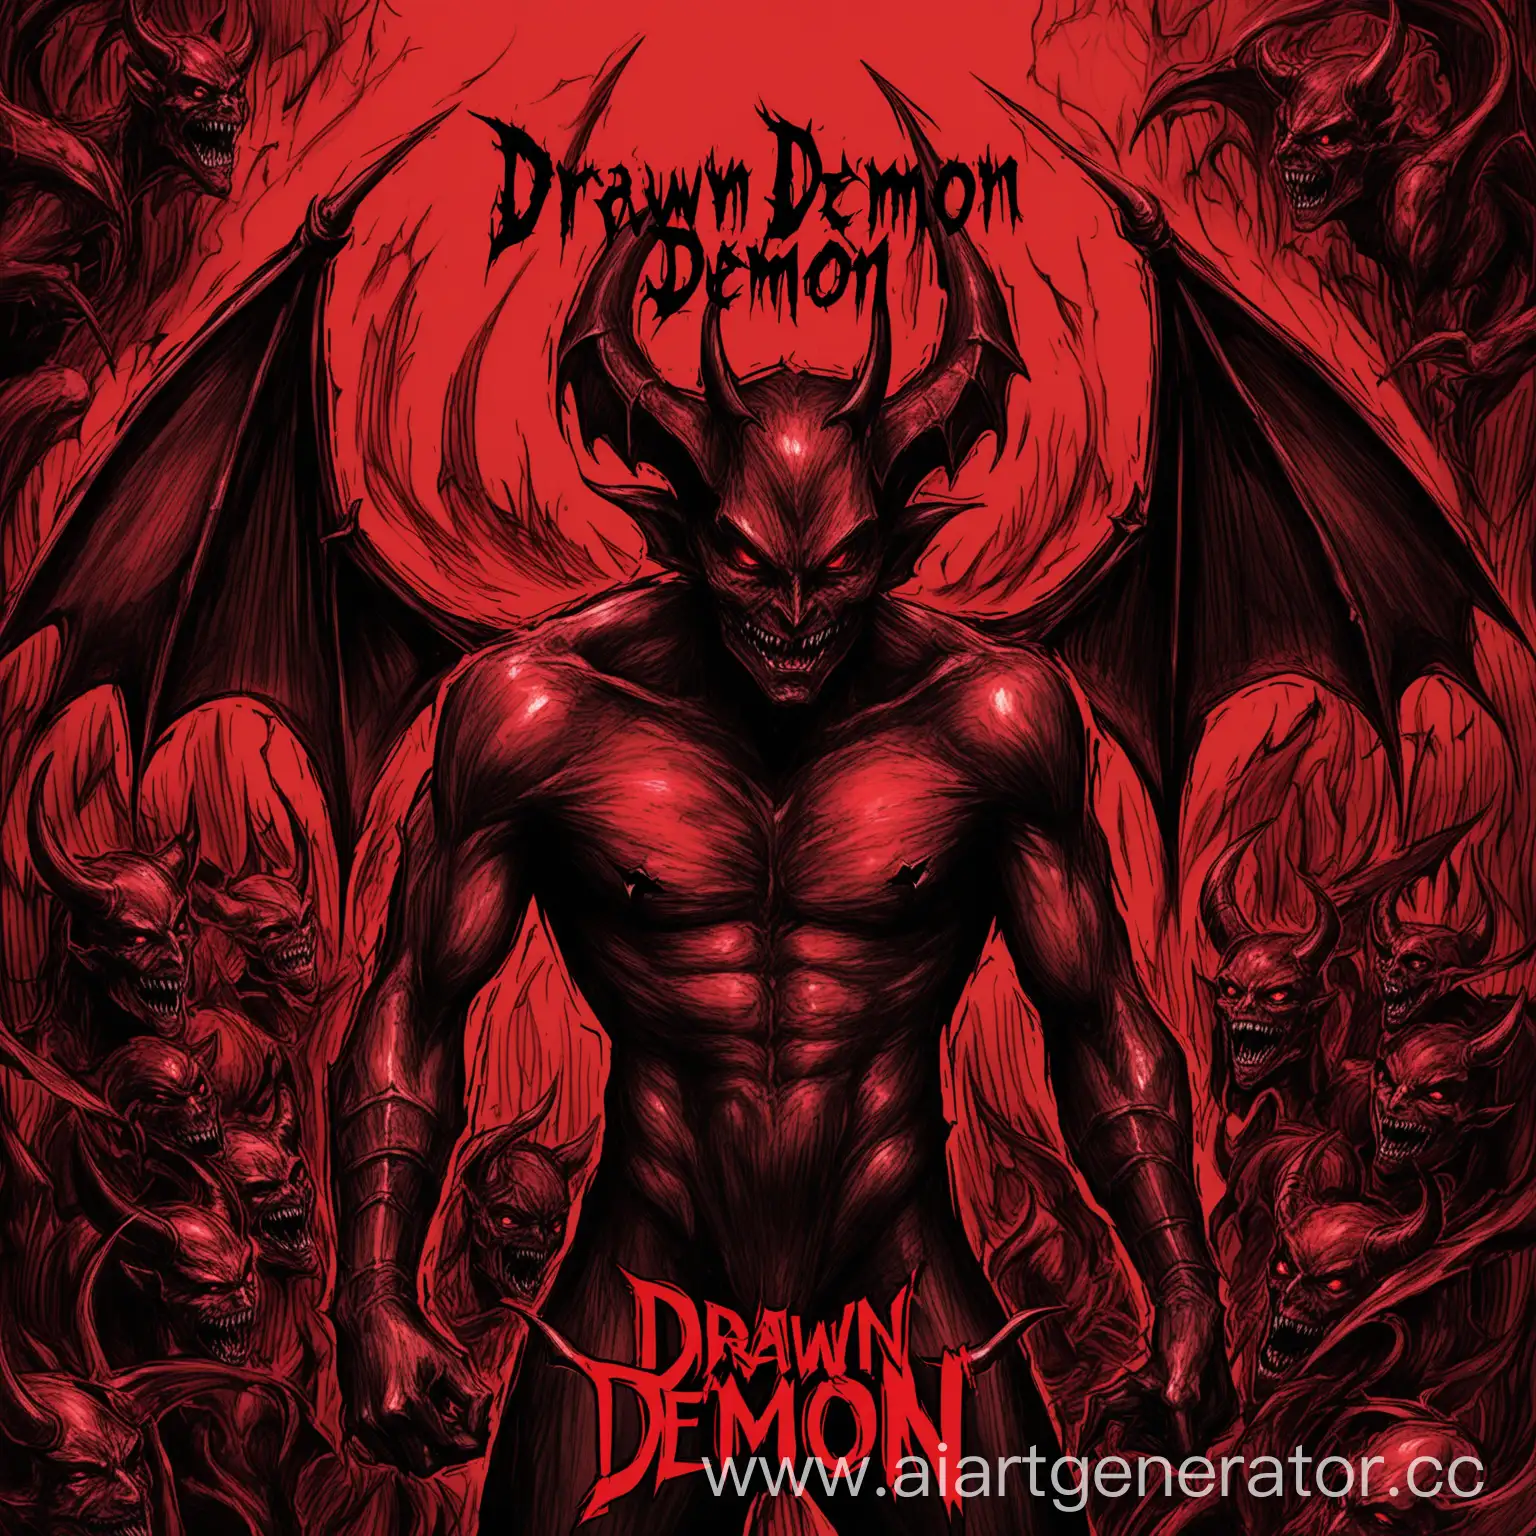 Чёрно-красная обложка нарисованного демона